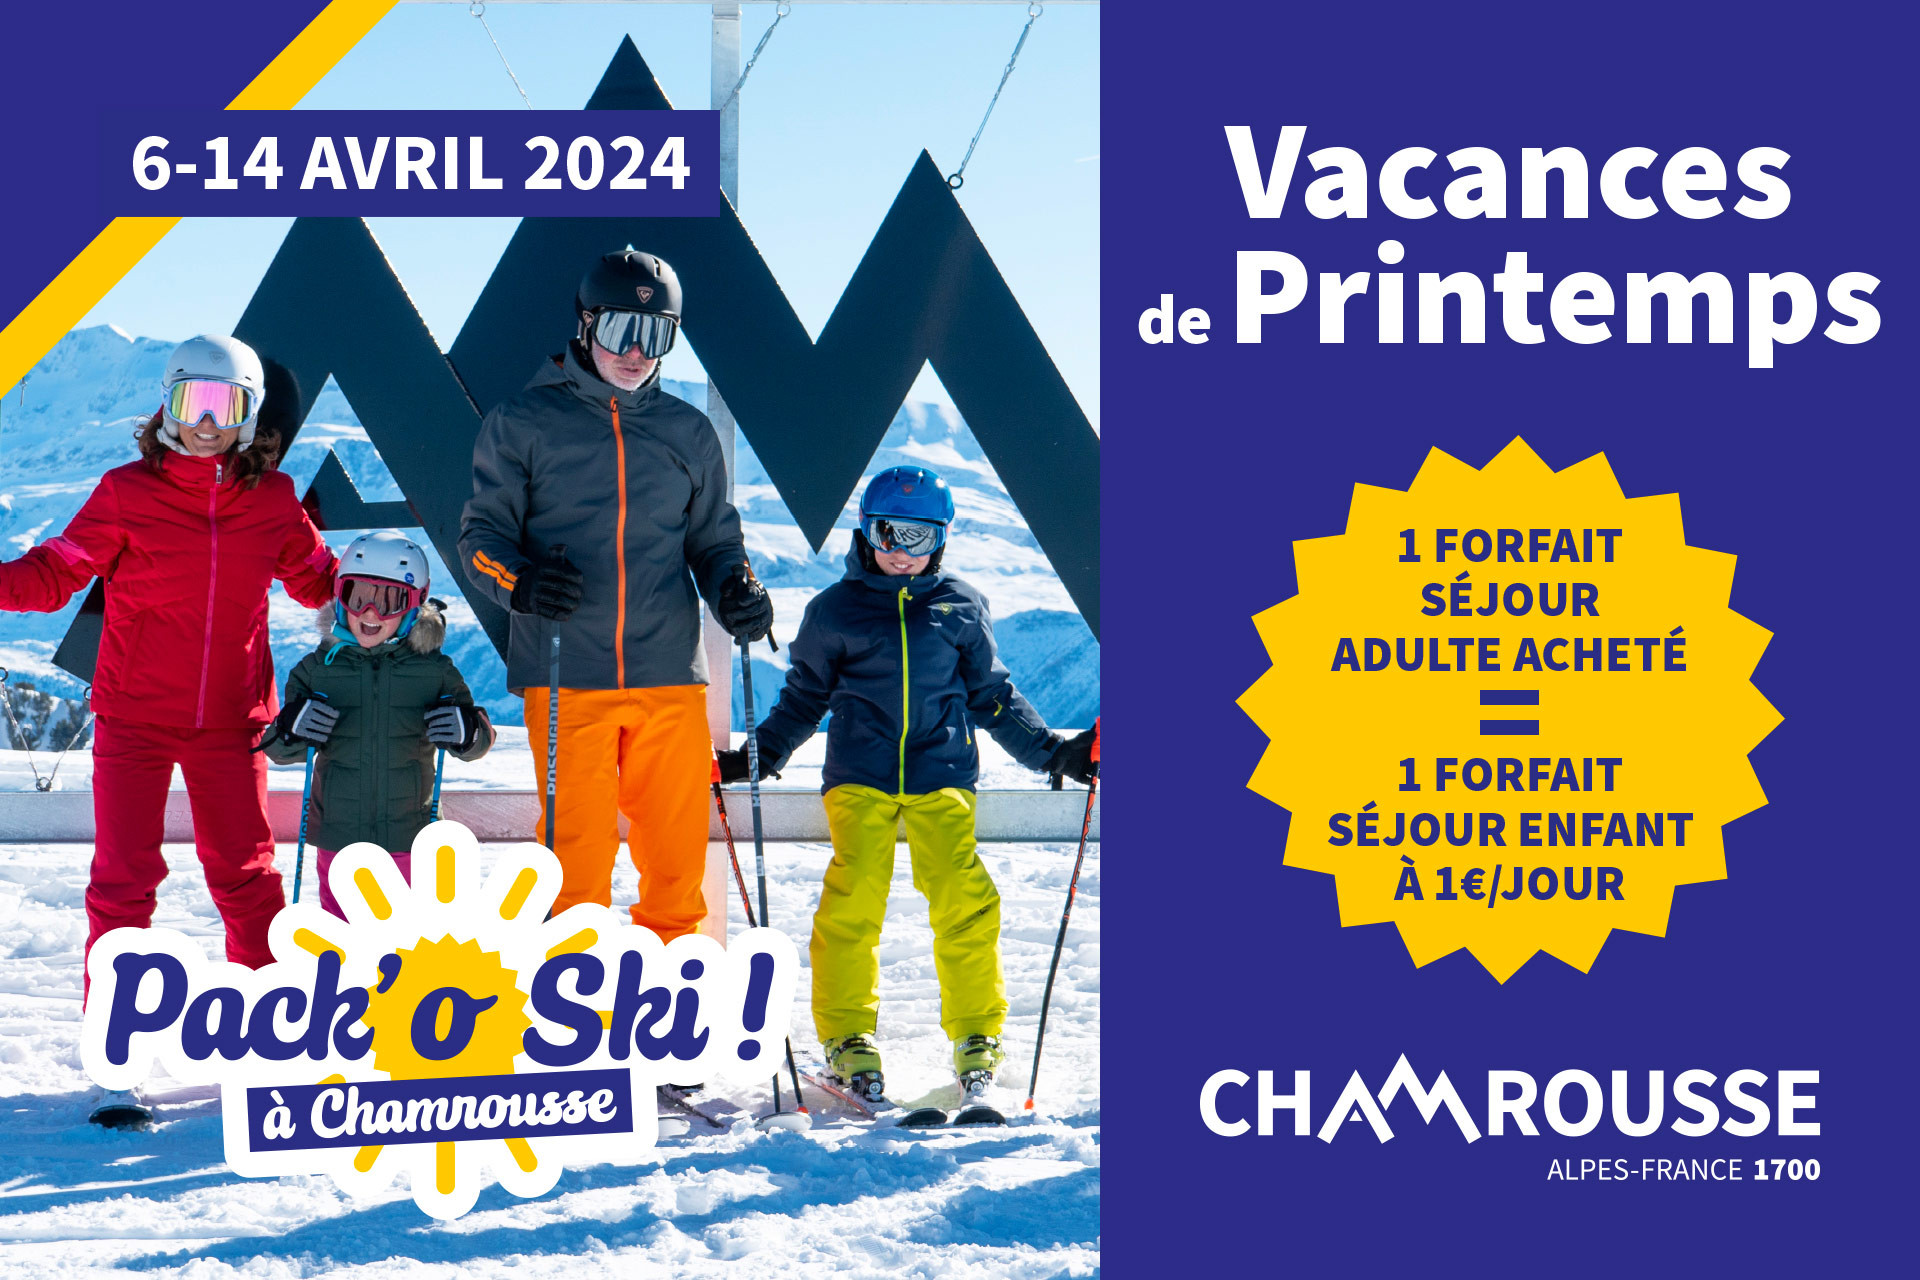 Chamrousse pack'o ski offer spring holidays family mountain resort grenoble isere french alps france